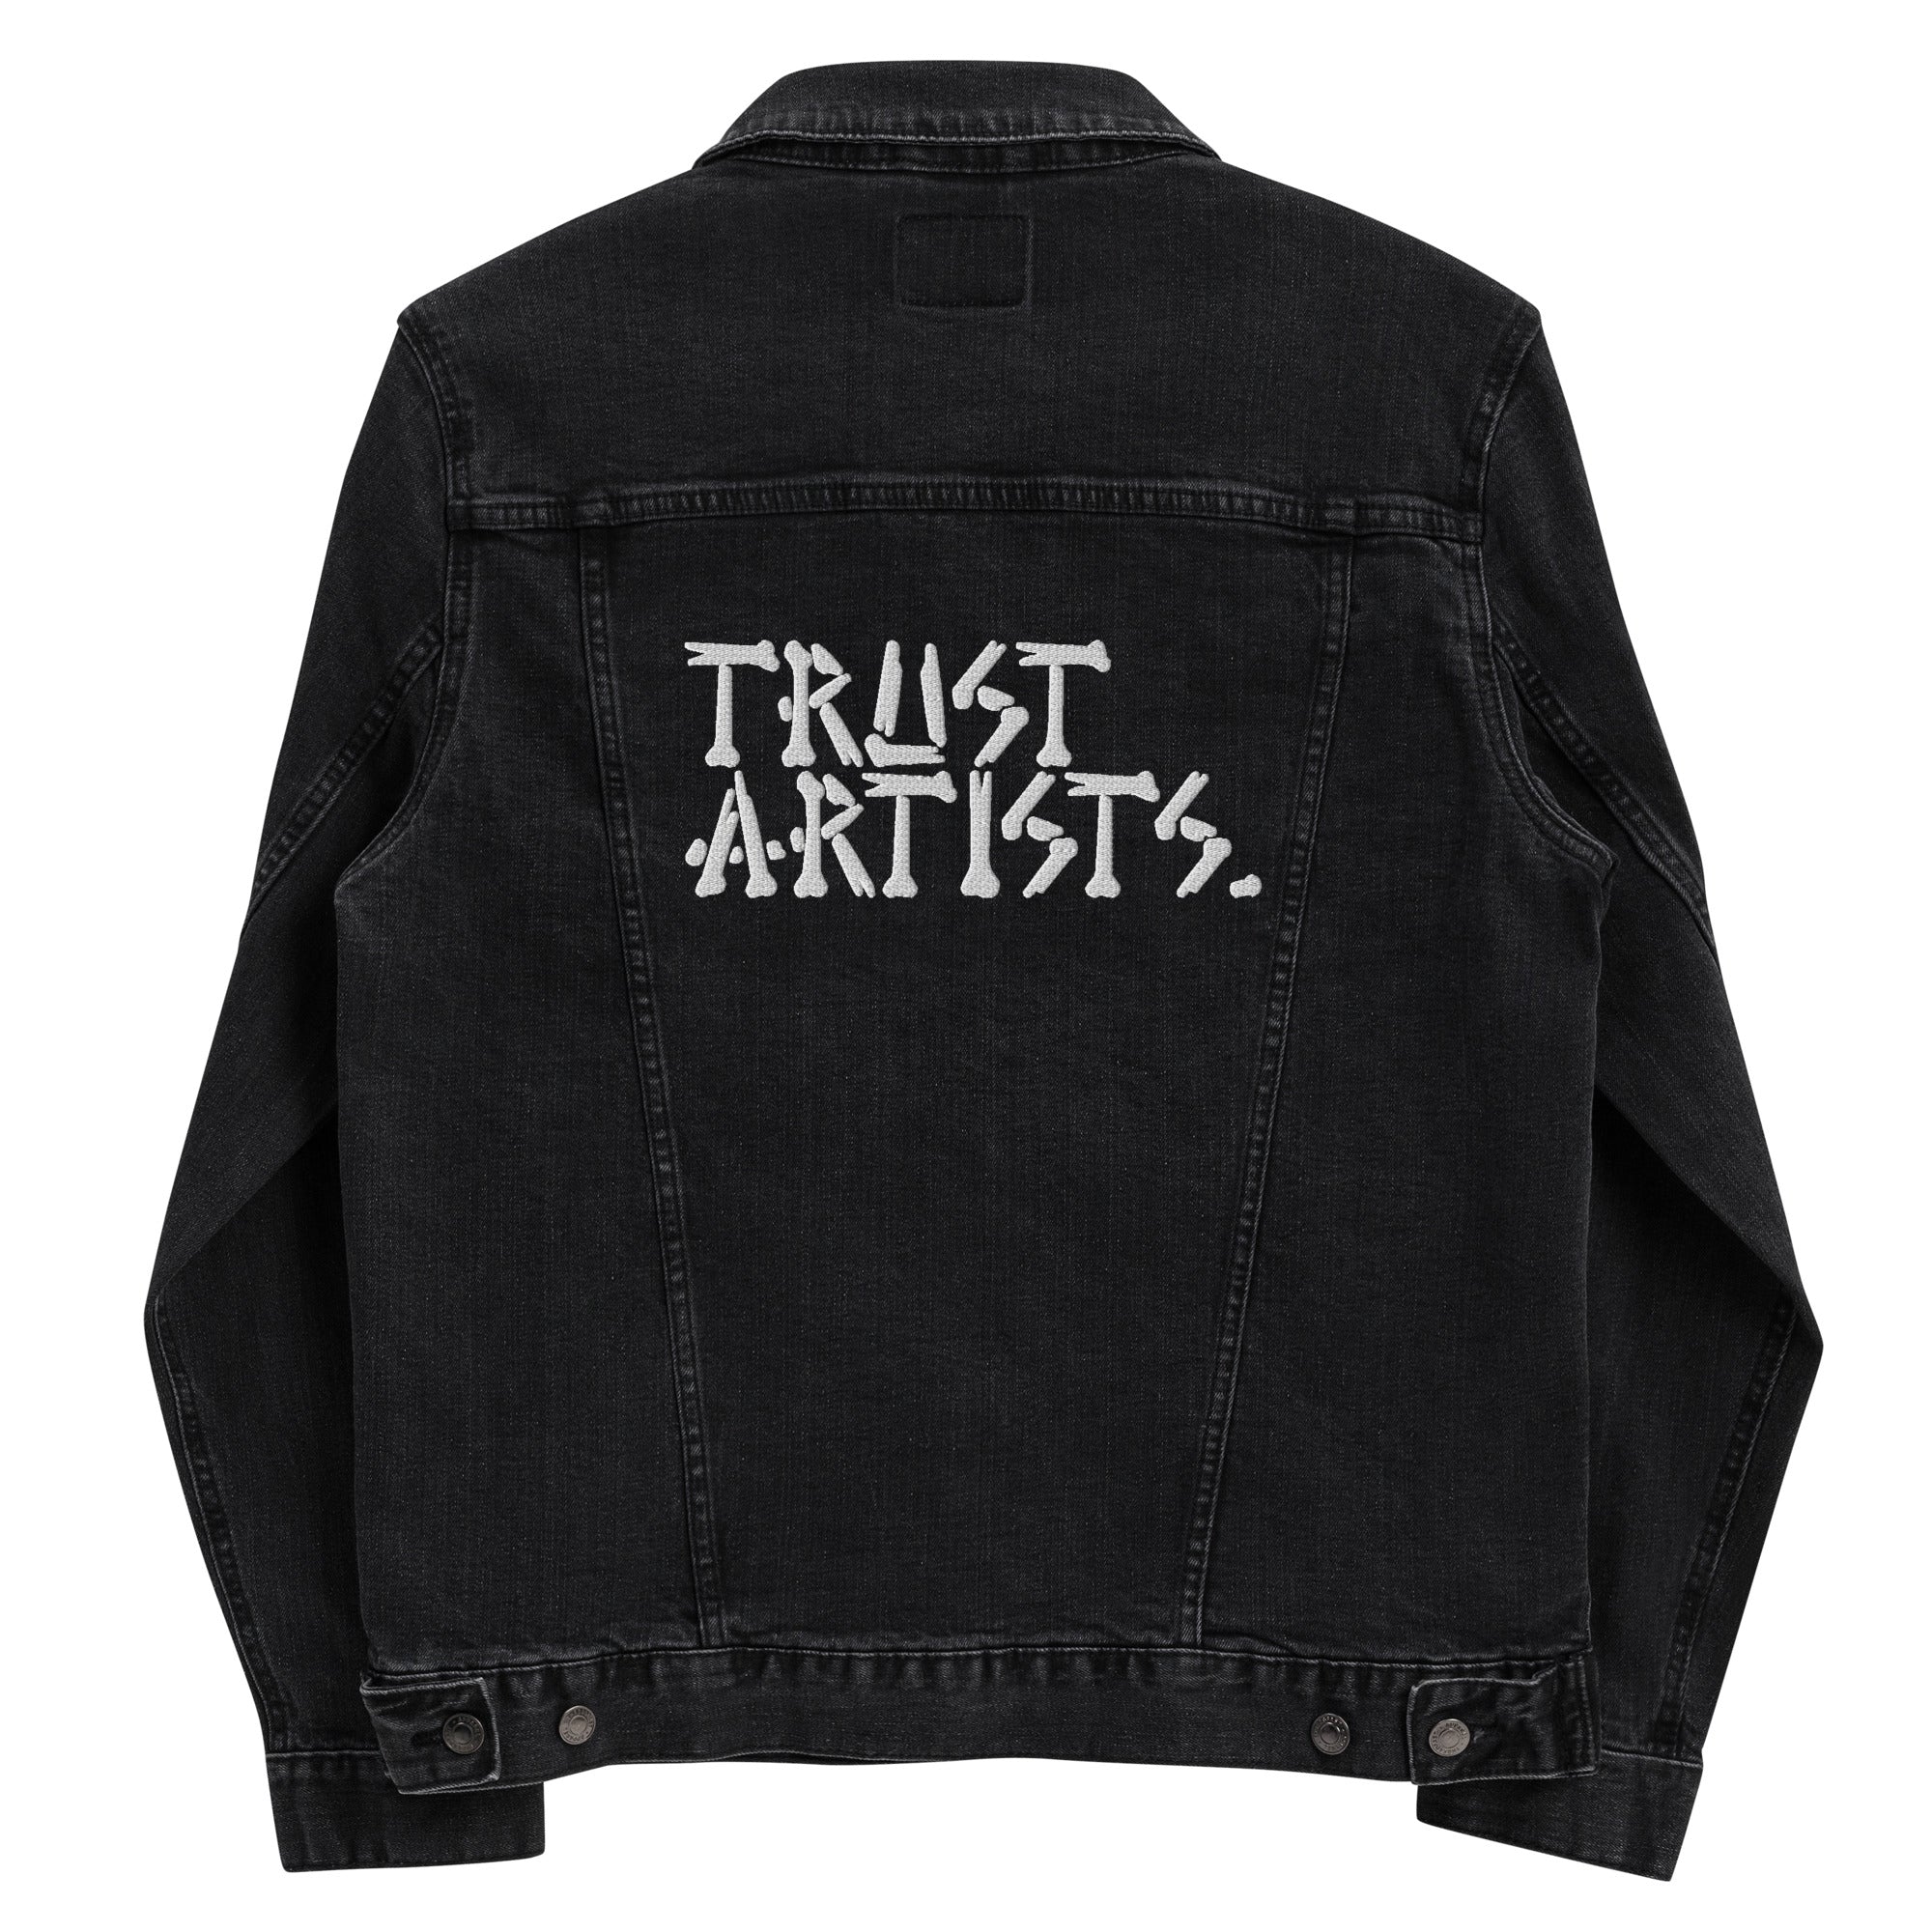 Trust Artists (Bones) Denim jacket